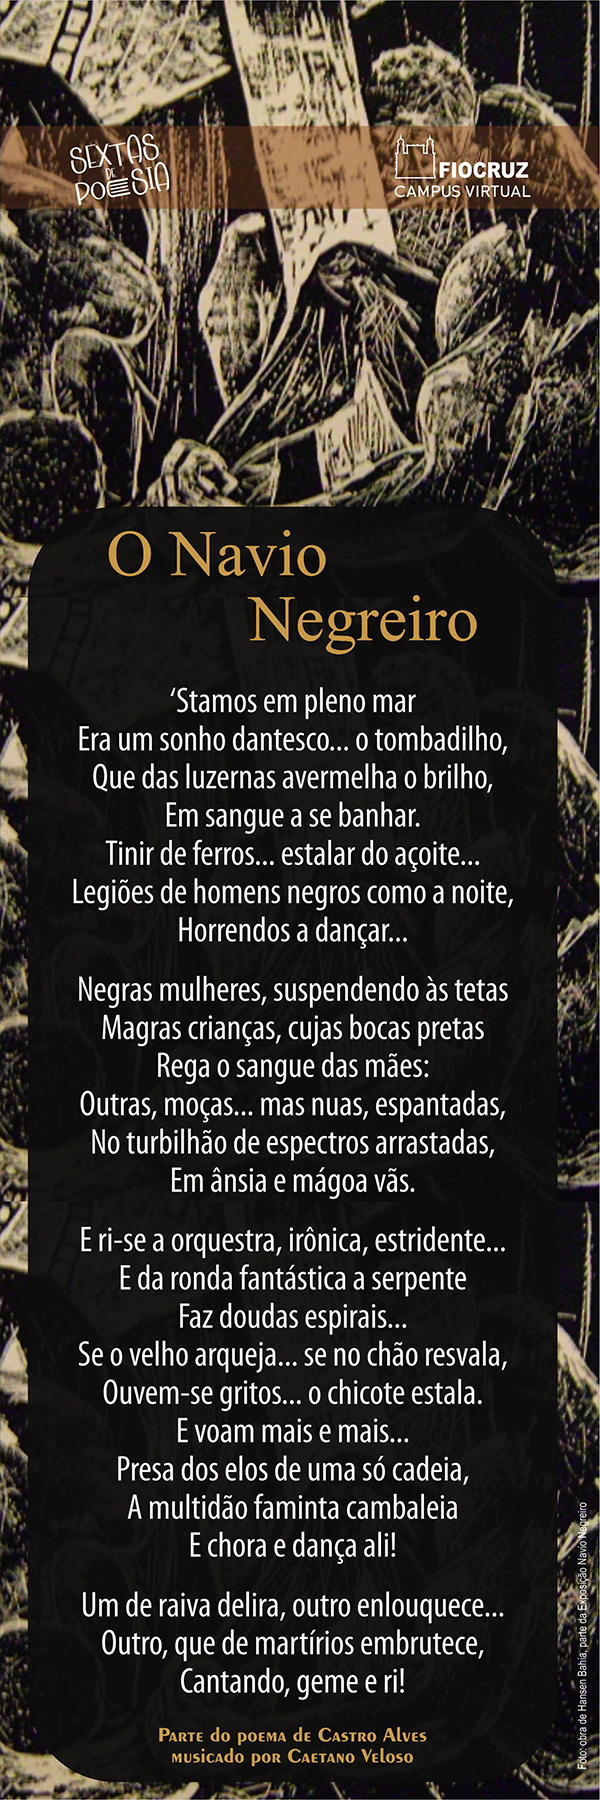 Sextas homenageia Castro Alves, o poeta dos escravos